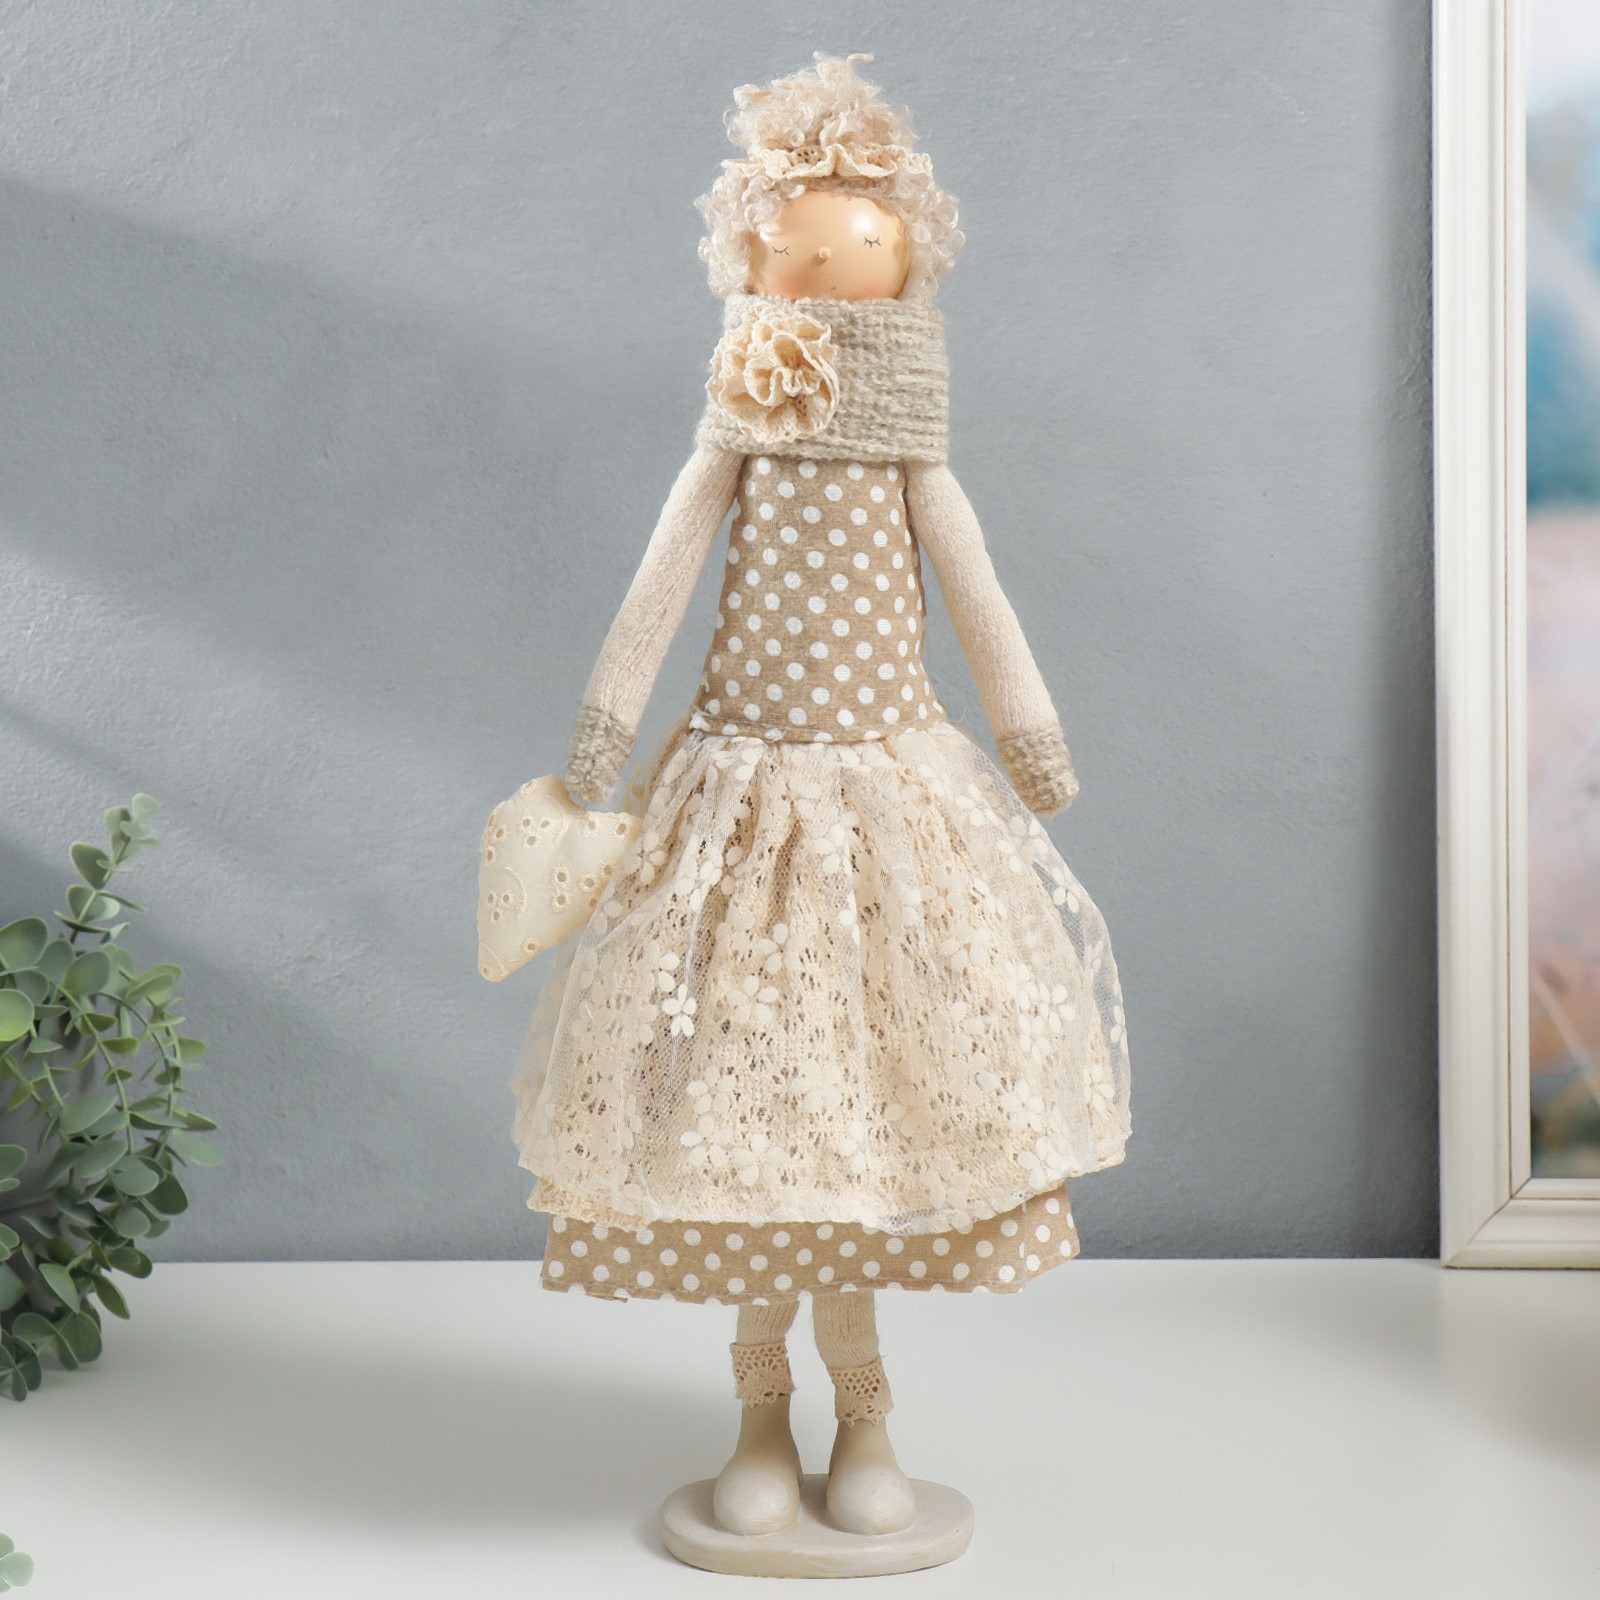 Кукла интерьерная Зимнее волшебство «Девушка с кудряшками платье в горох с сердцем» 48 5х14х17 см - фото 1